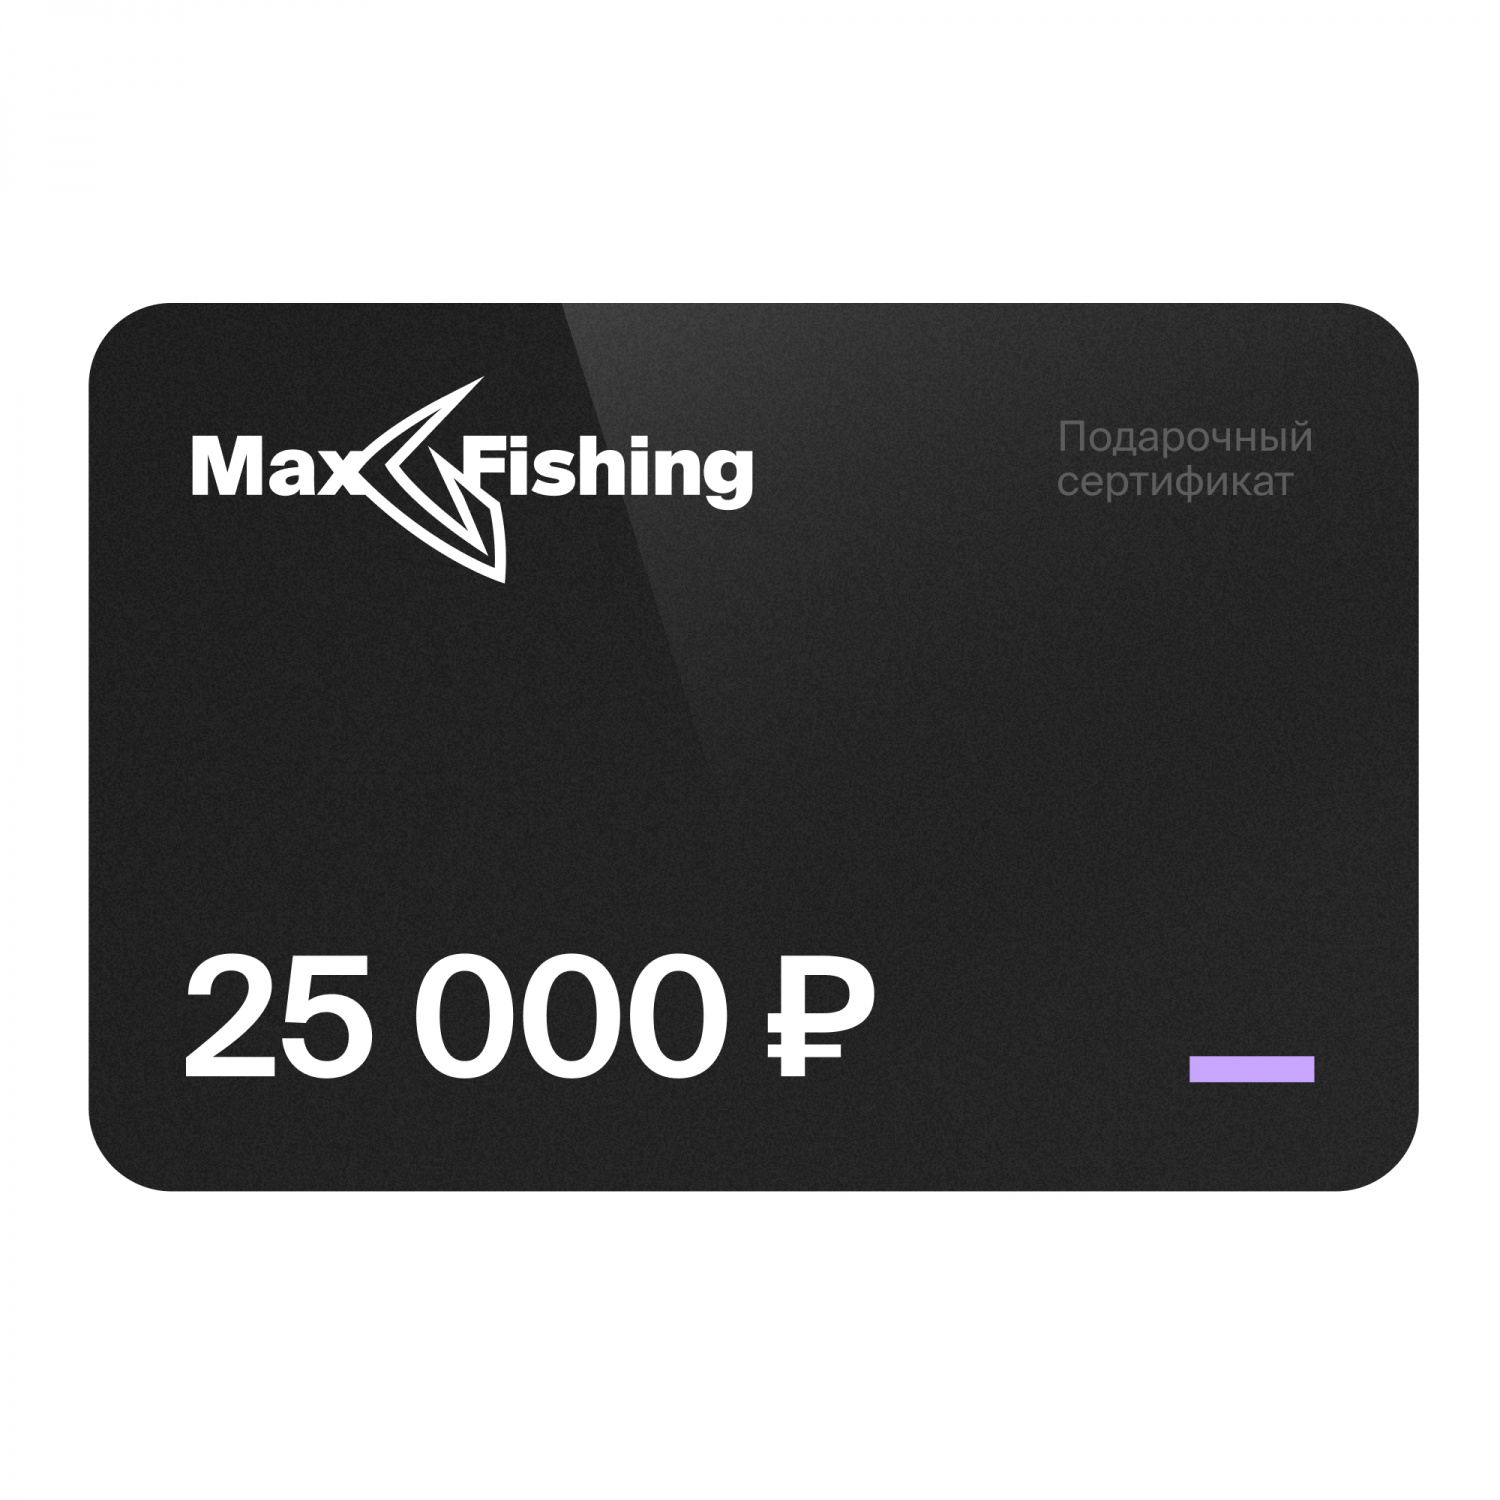 Подарочный сертификат MaxFishing 25 000 ₽ виртуальный подарочный сертификат 5 000